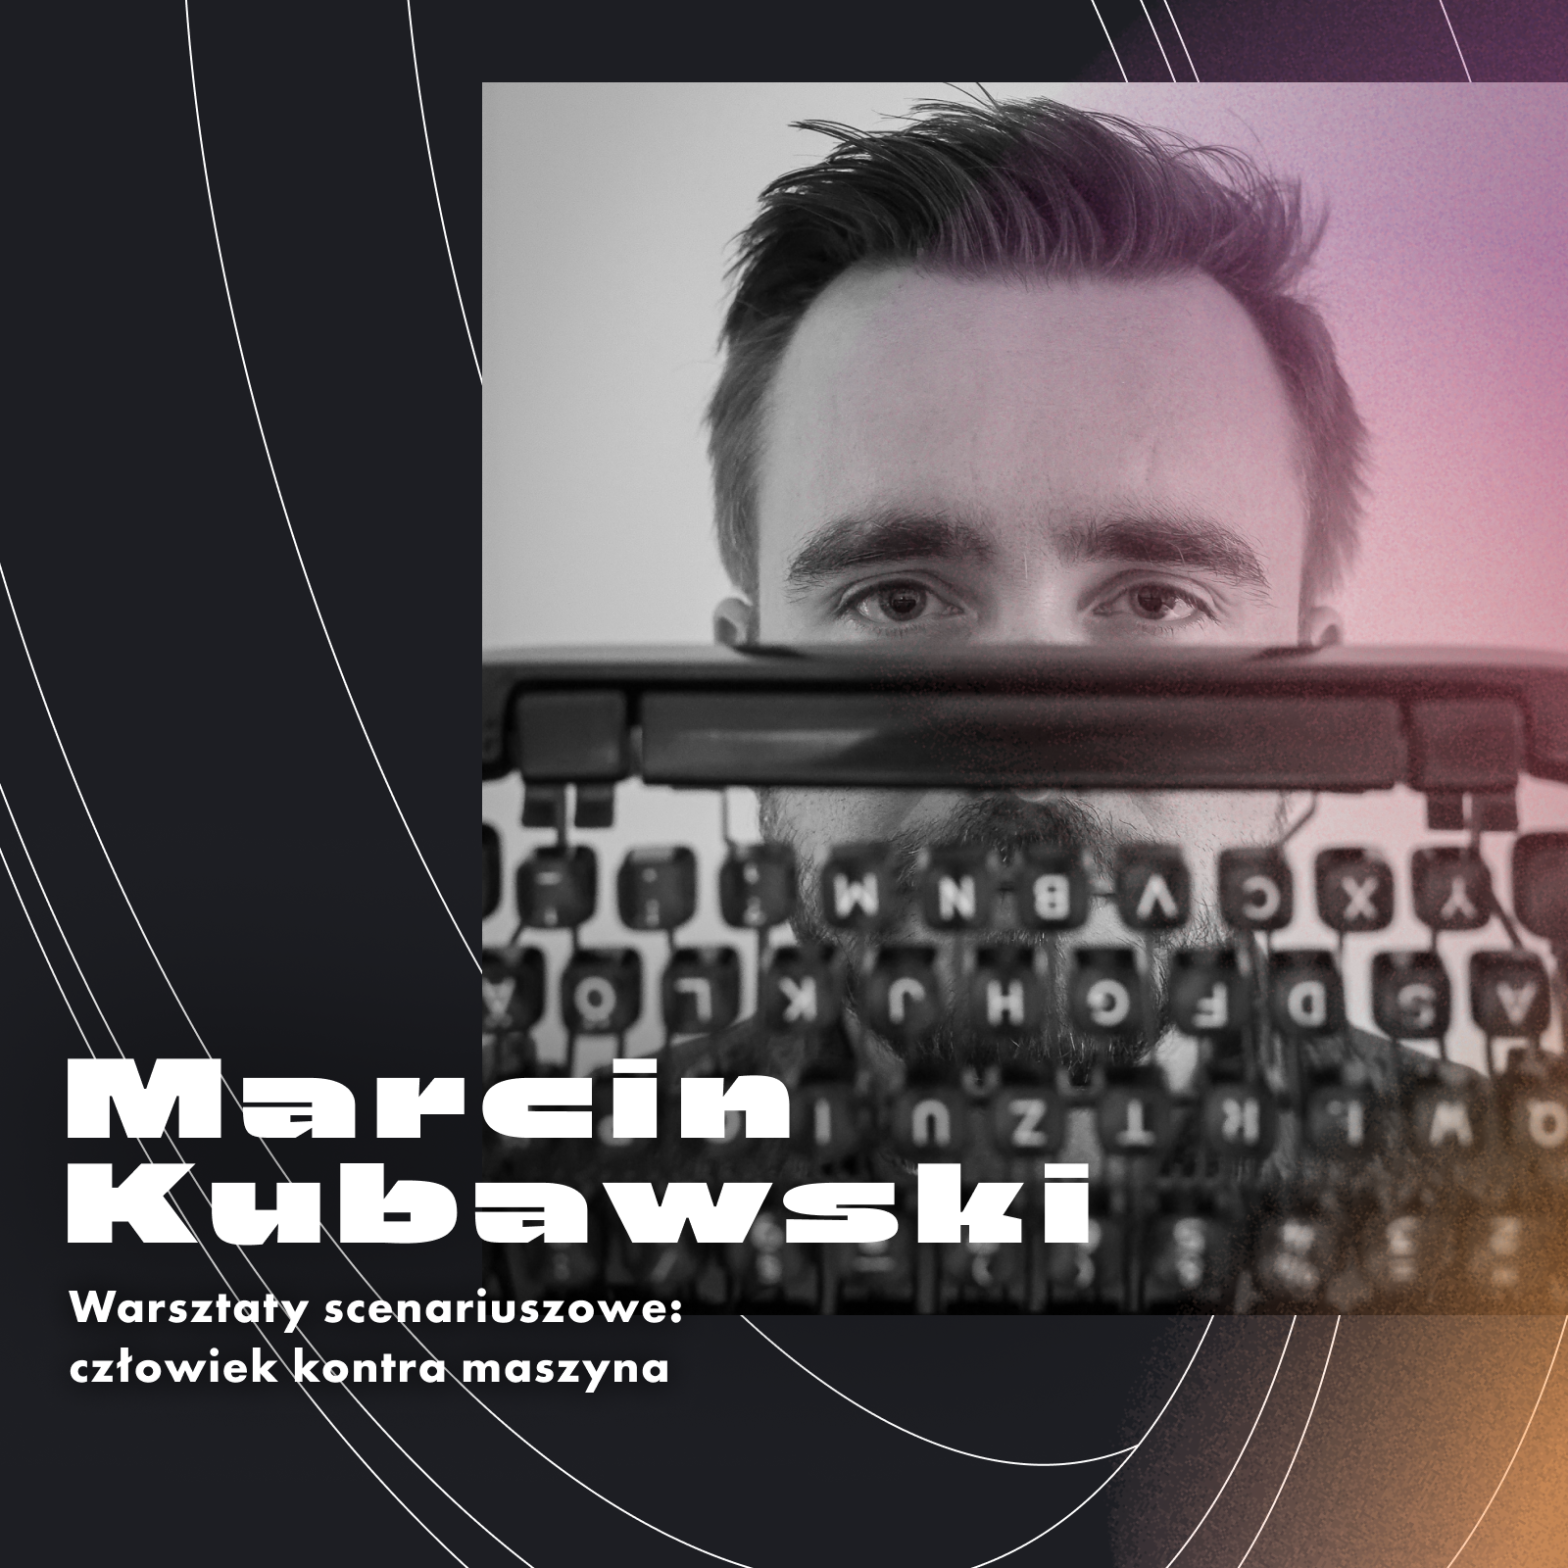 Portret Marcina Kubawskiego i napis Marcin Kubawski Warsztaty scenariuszowe: człowiek kontra maszyna